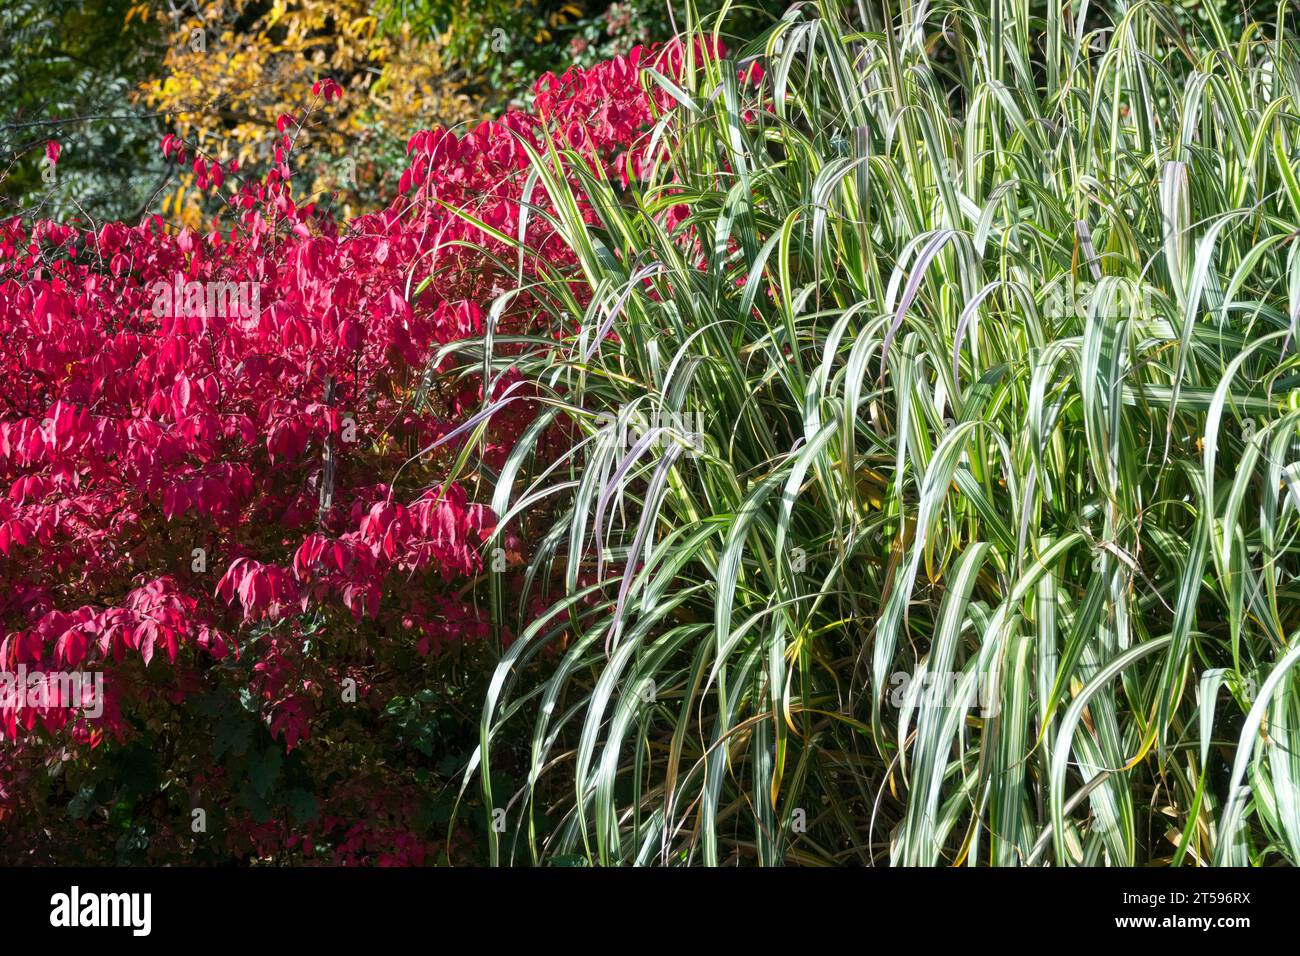 Ein schöner Herbstgarten Oktober der Kontrast der Farben des Grases und der farbenfrohe Busch Euonymus alatus Miscanthus sinensis 'Cabaret' Grenze Stockfoto